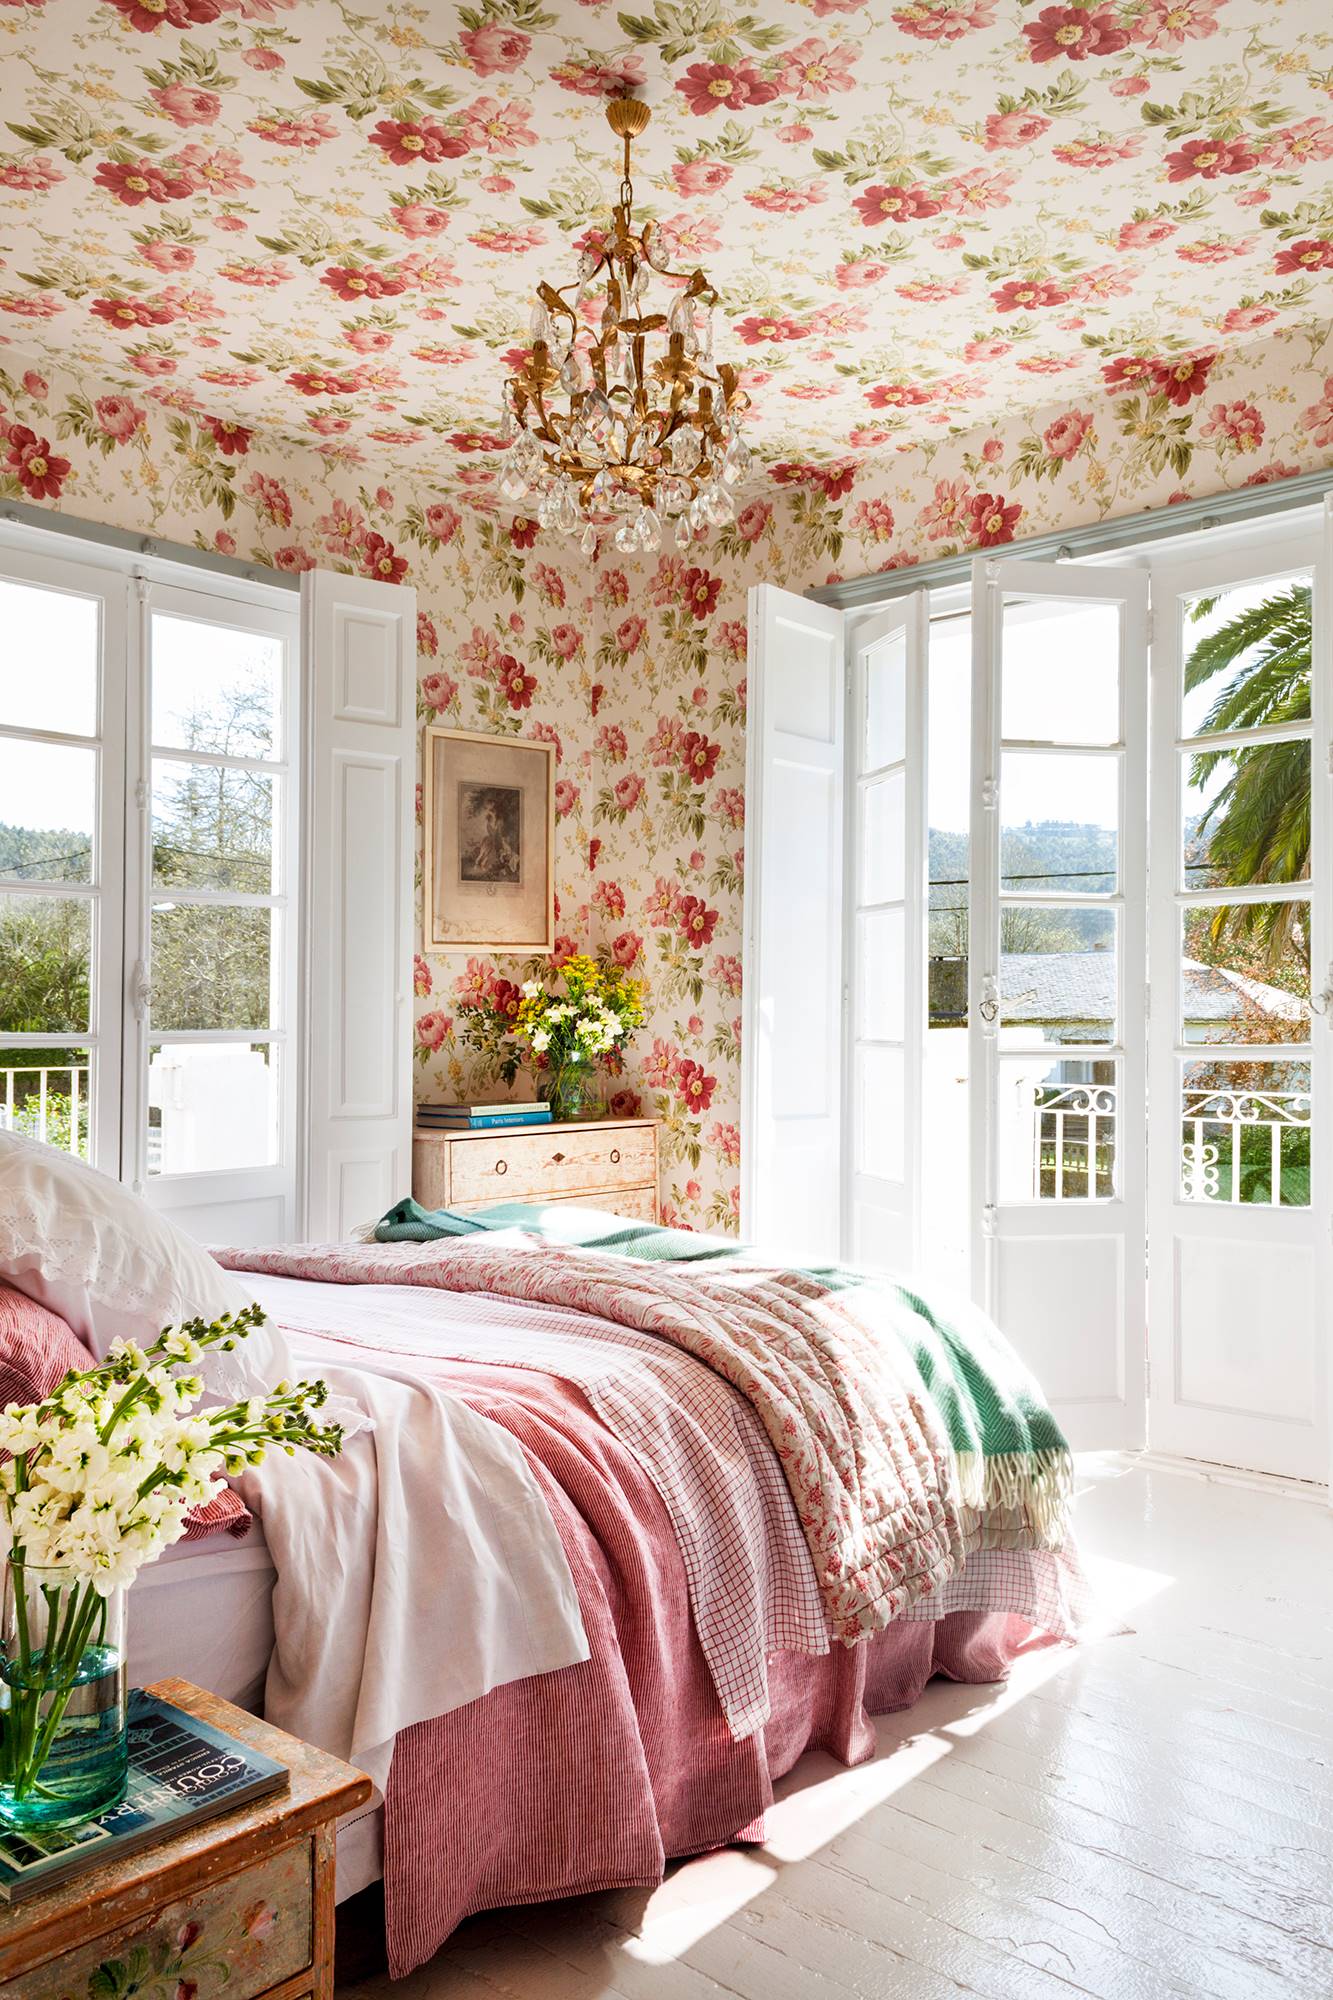 Dormitorio con ventanales y papel pintado de flores en techo y paredes_ 00457376